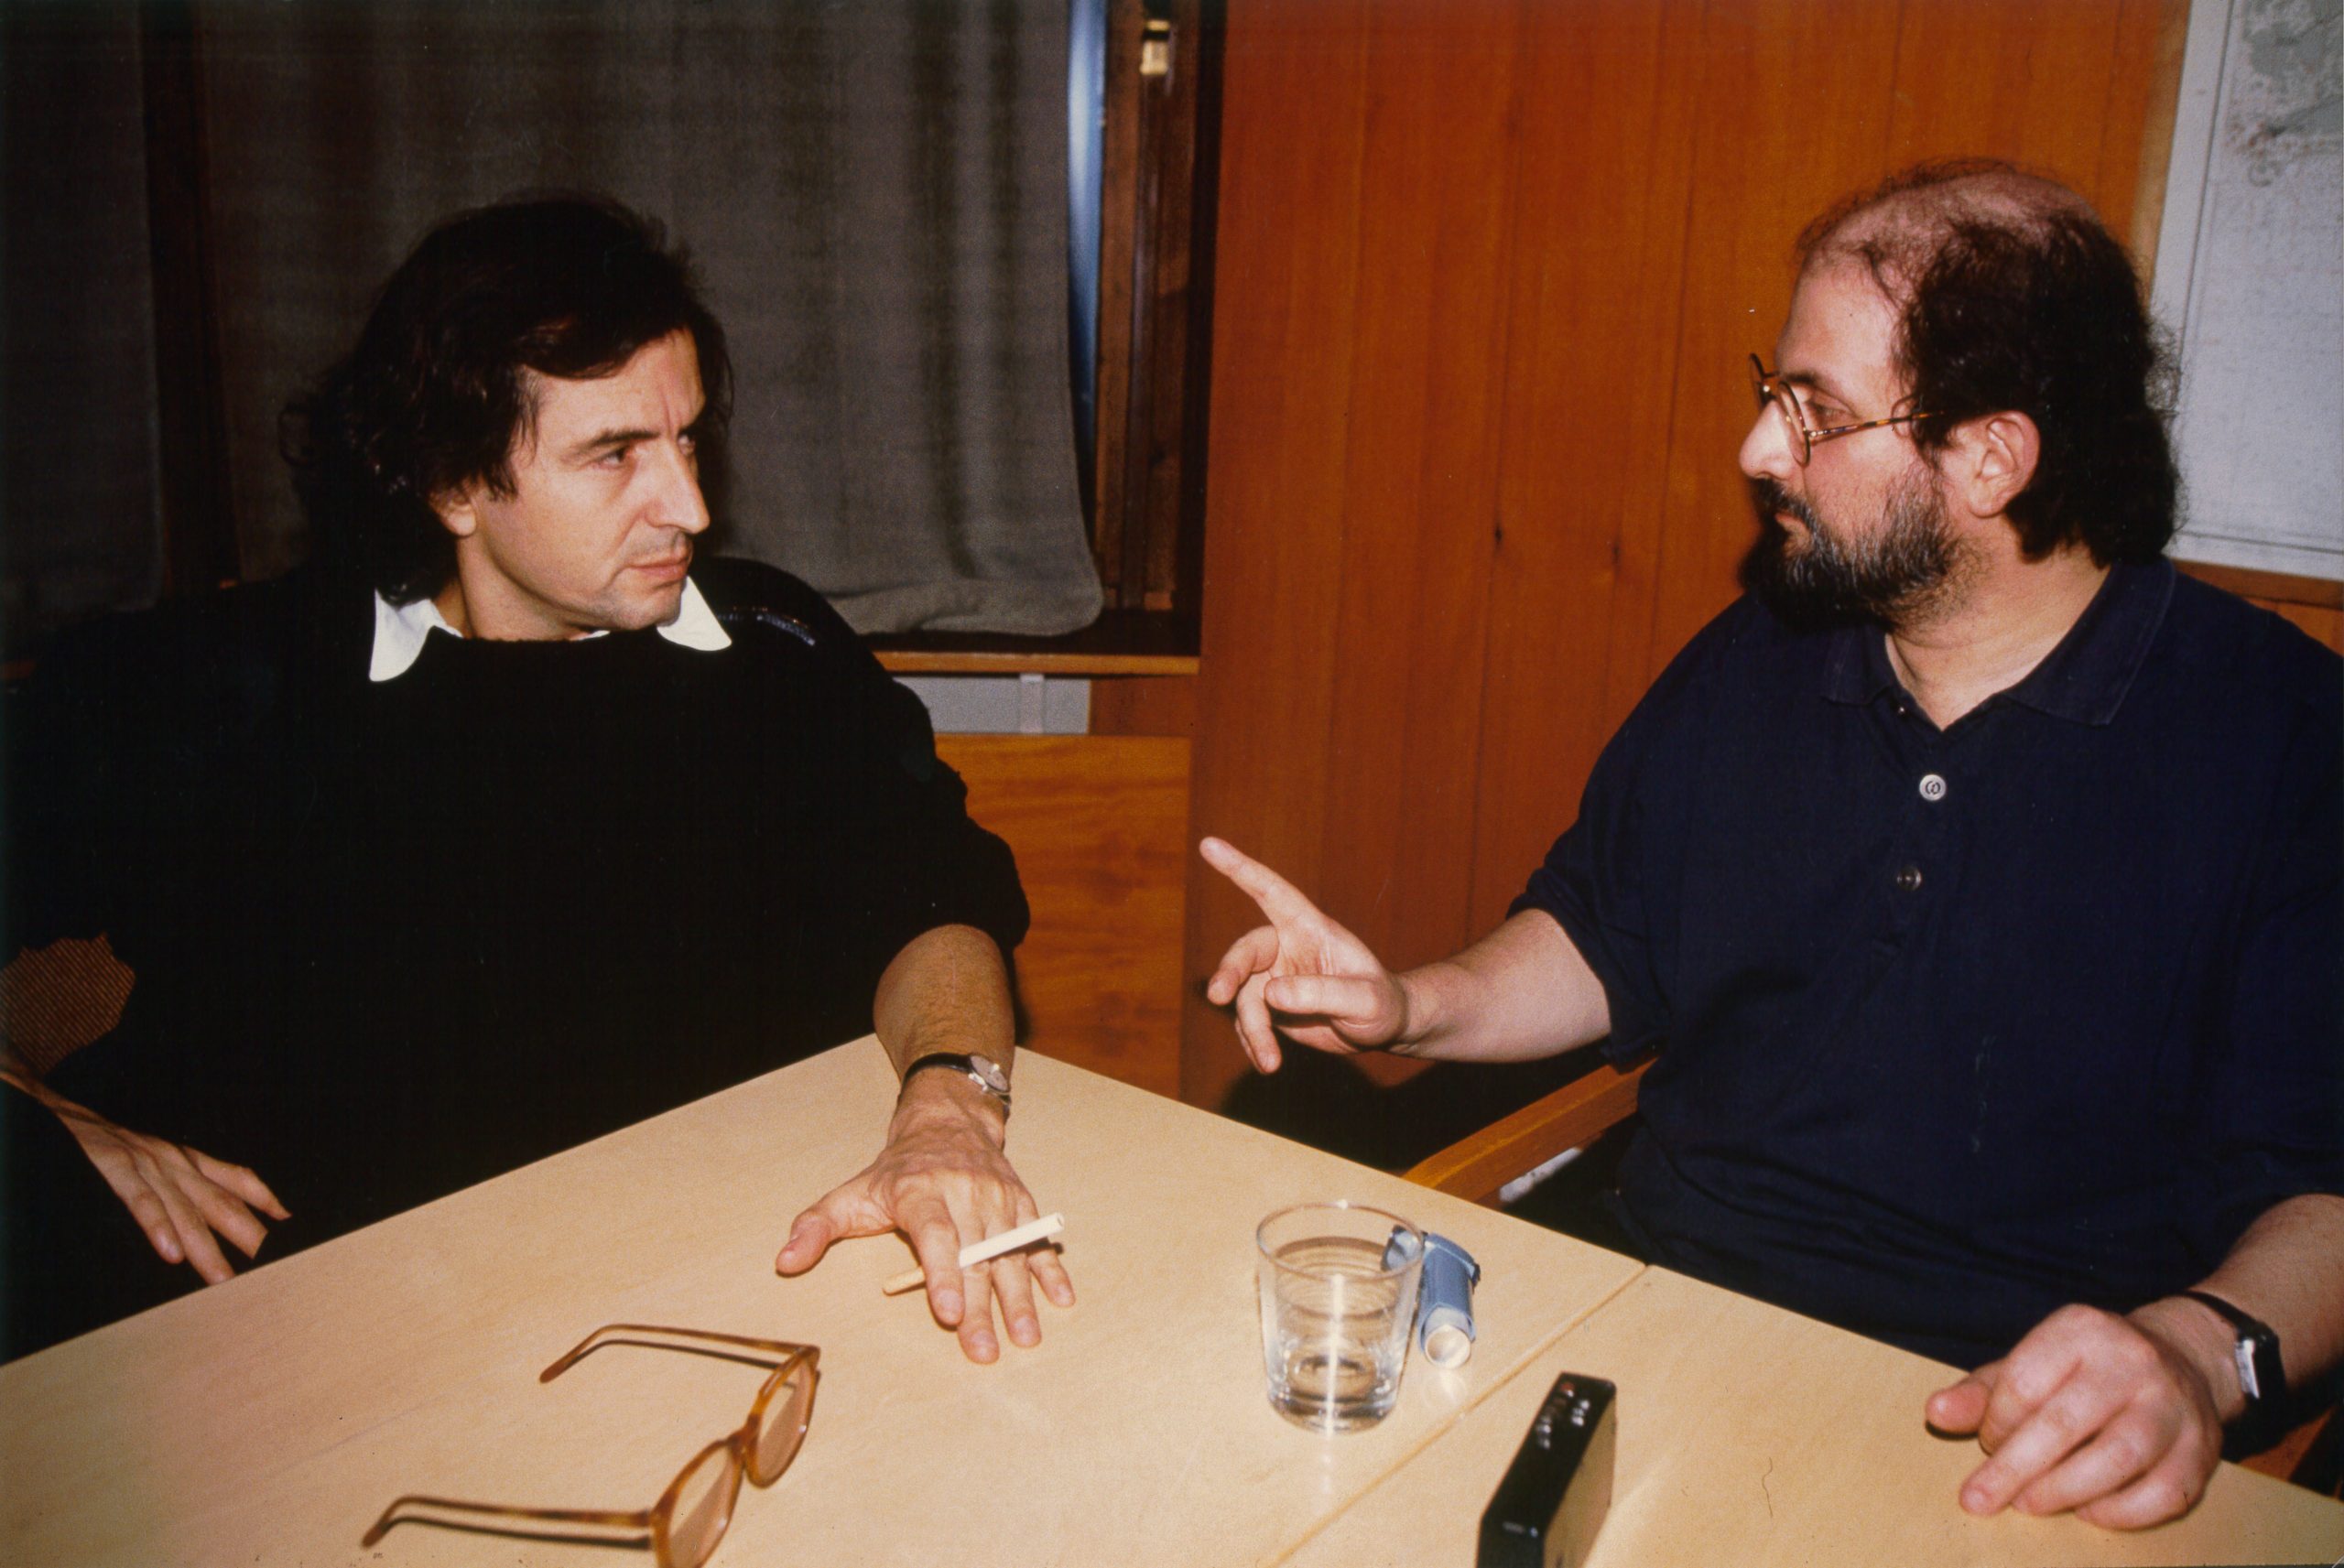 Bernard-Henri Lévy and Salman Rushdie.